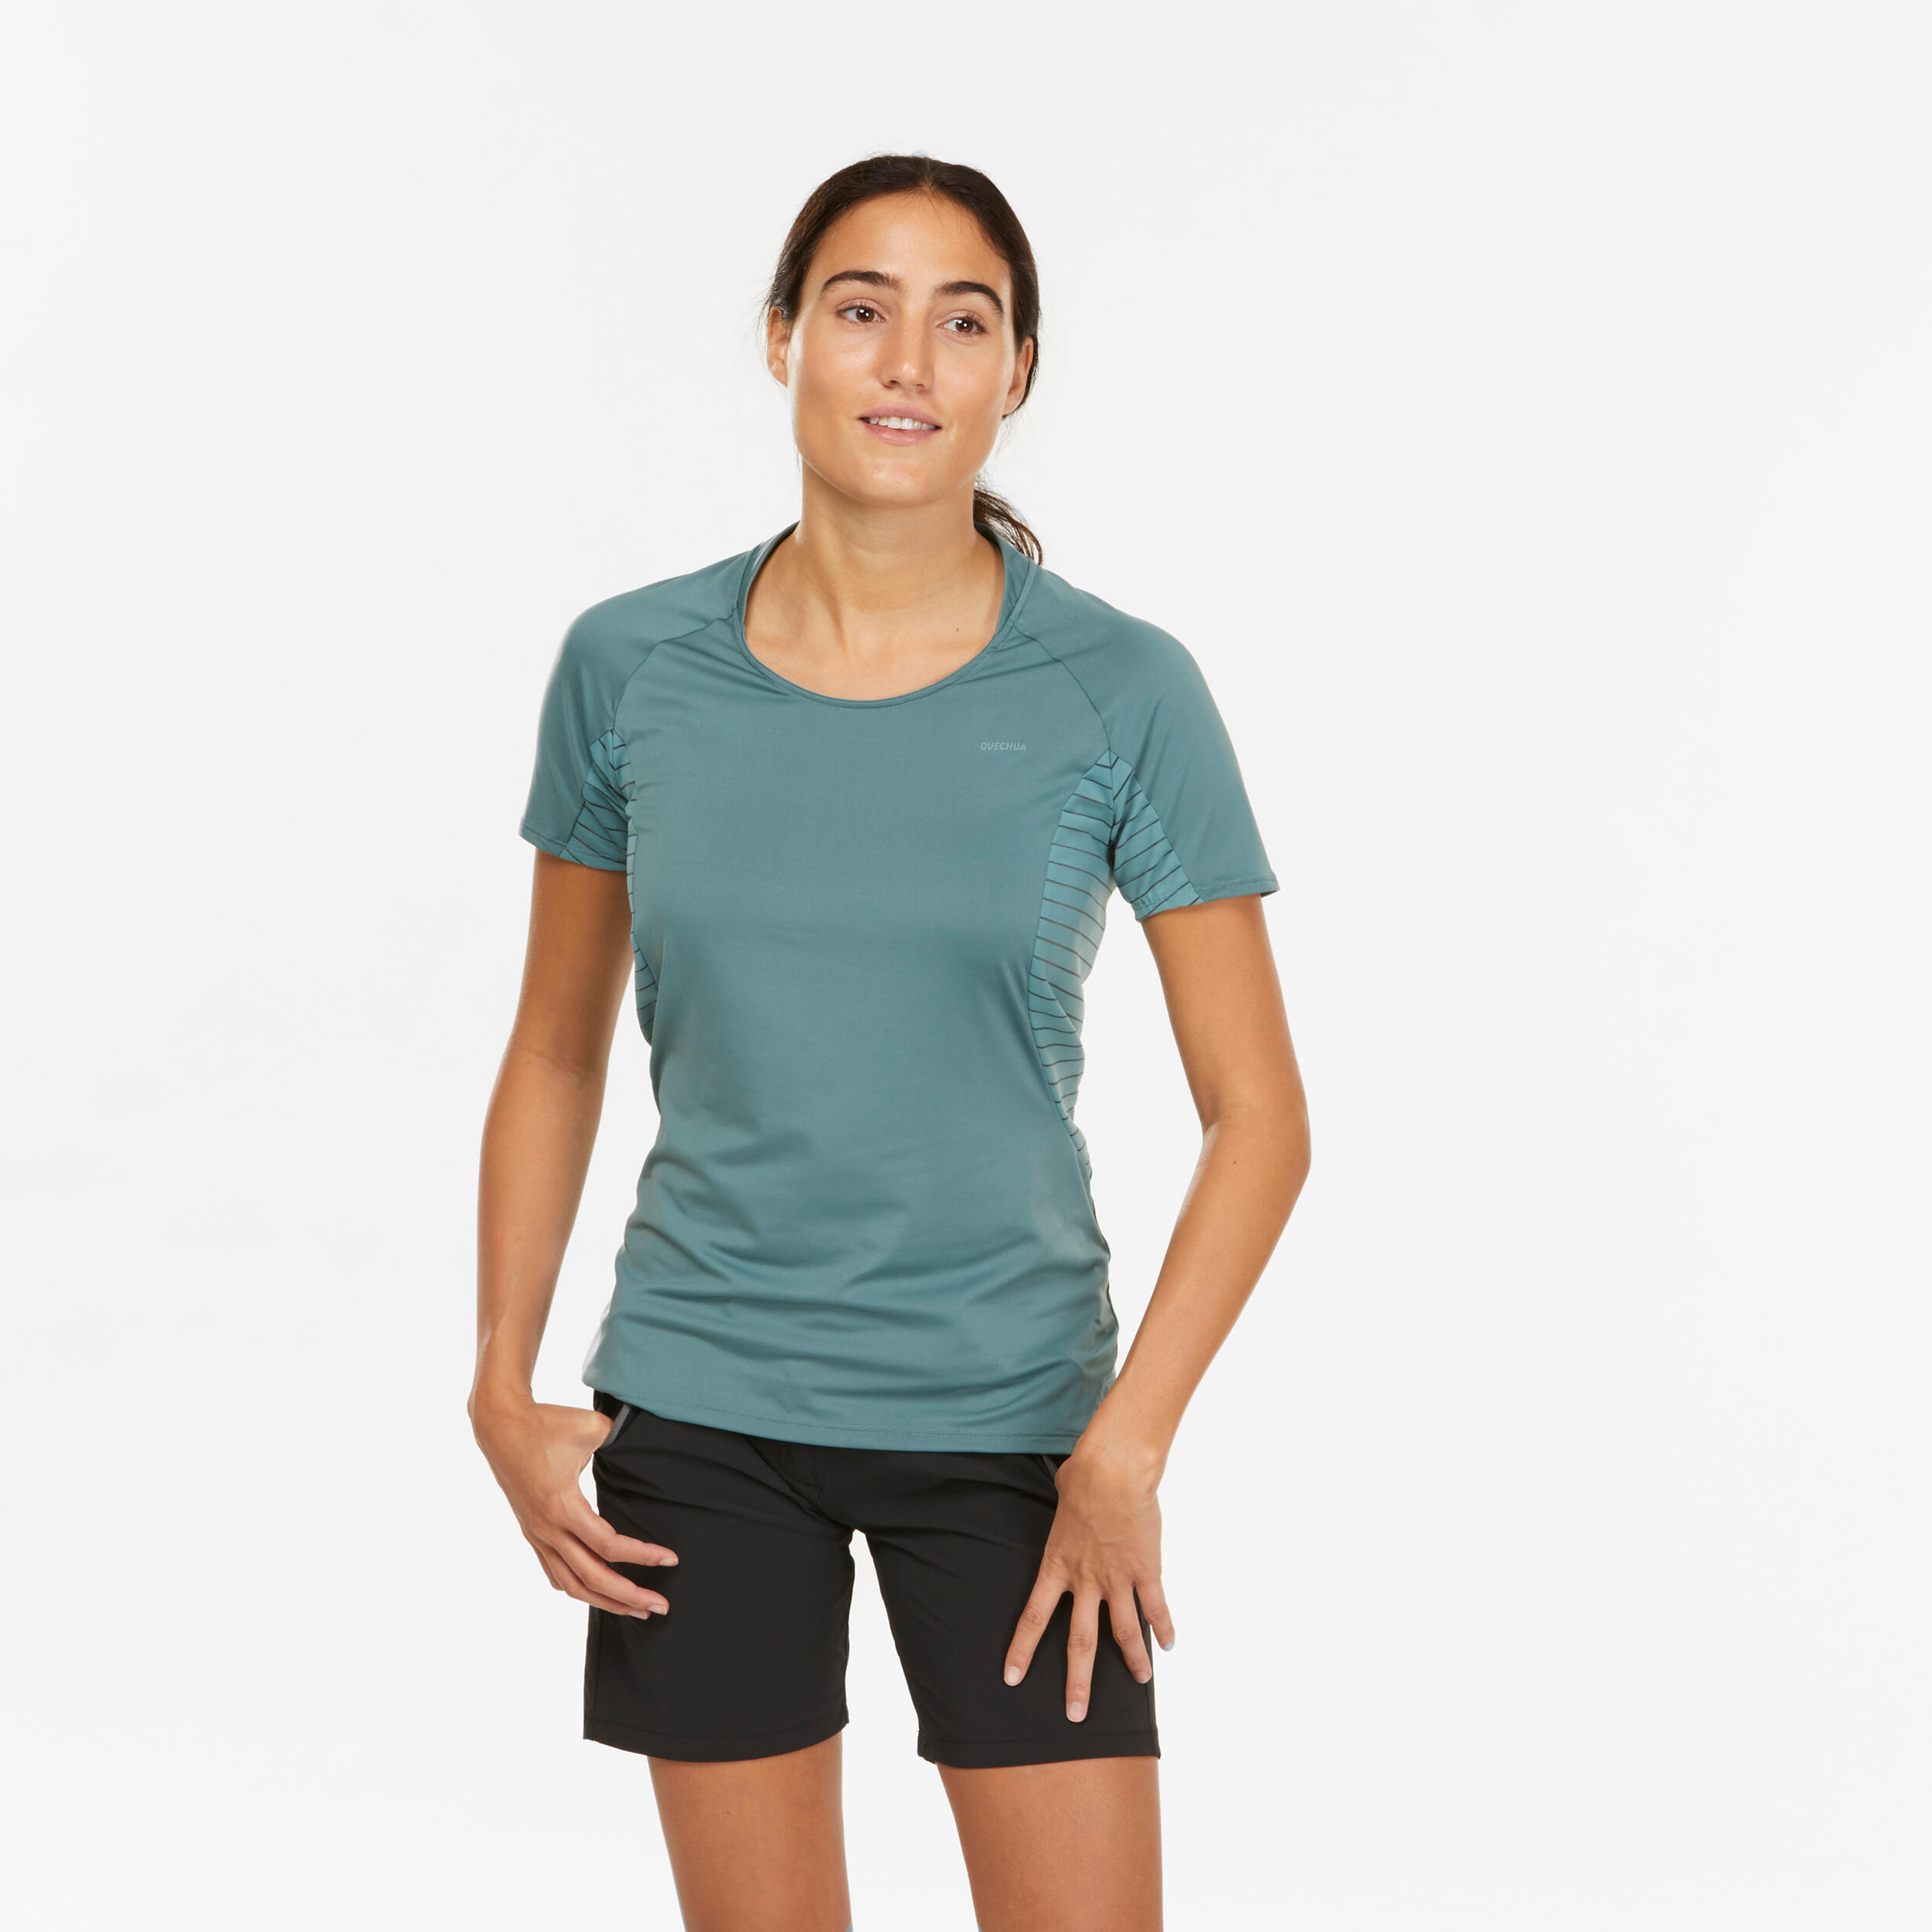 T-shirt sport femme – MH 500 vert - QUECHUA